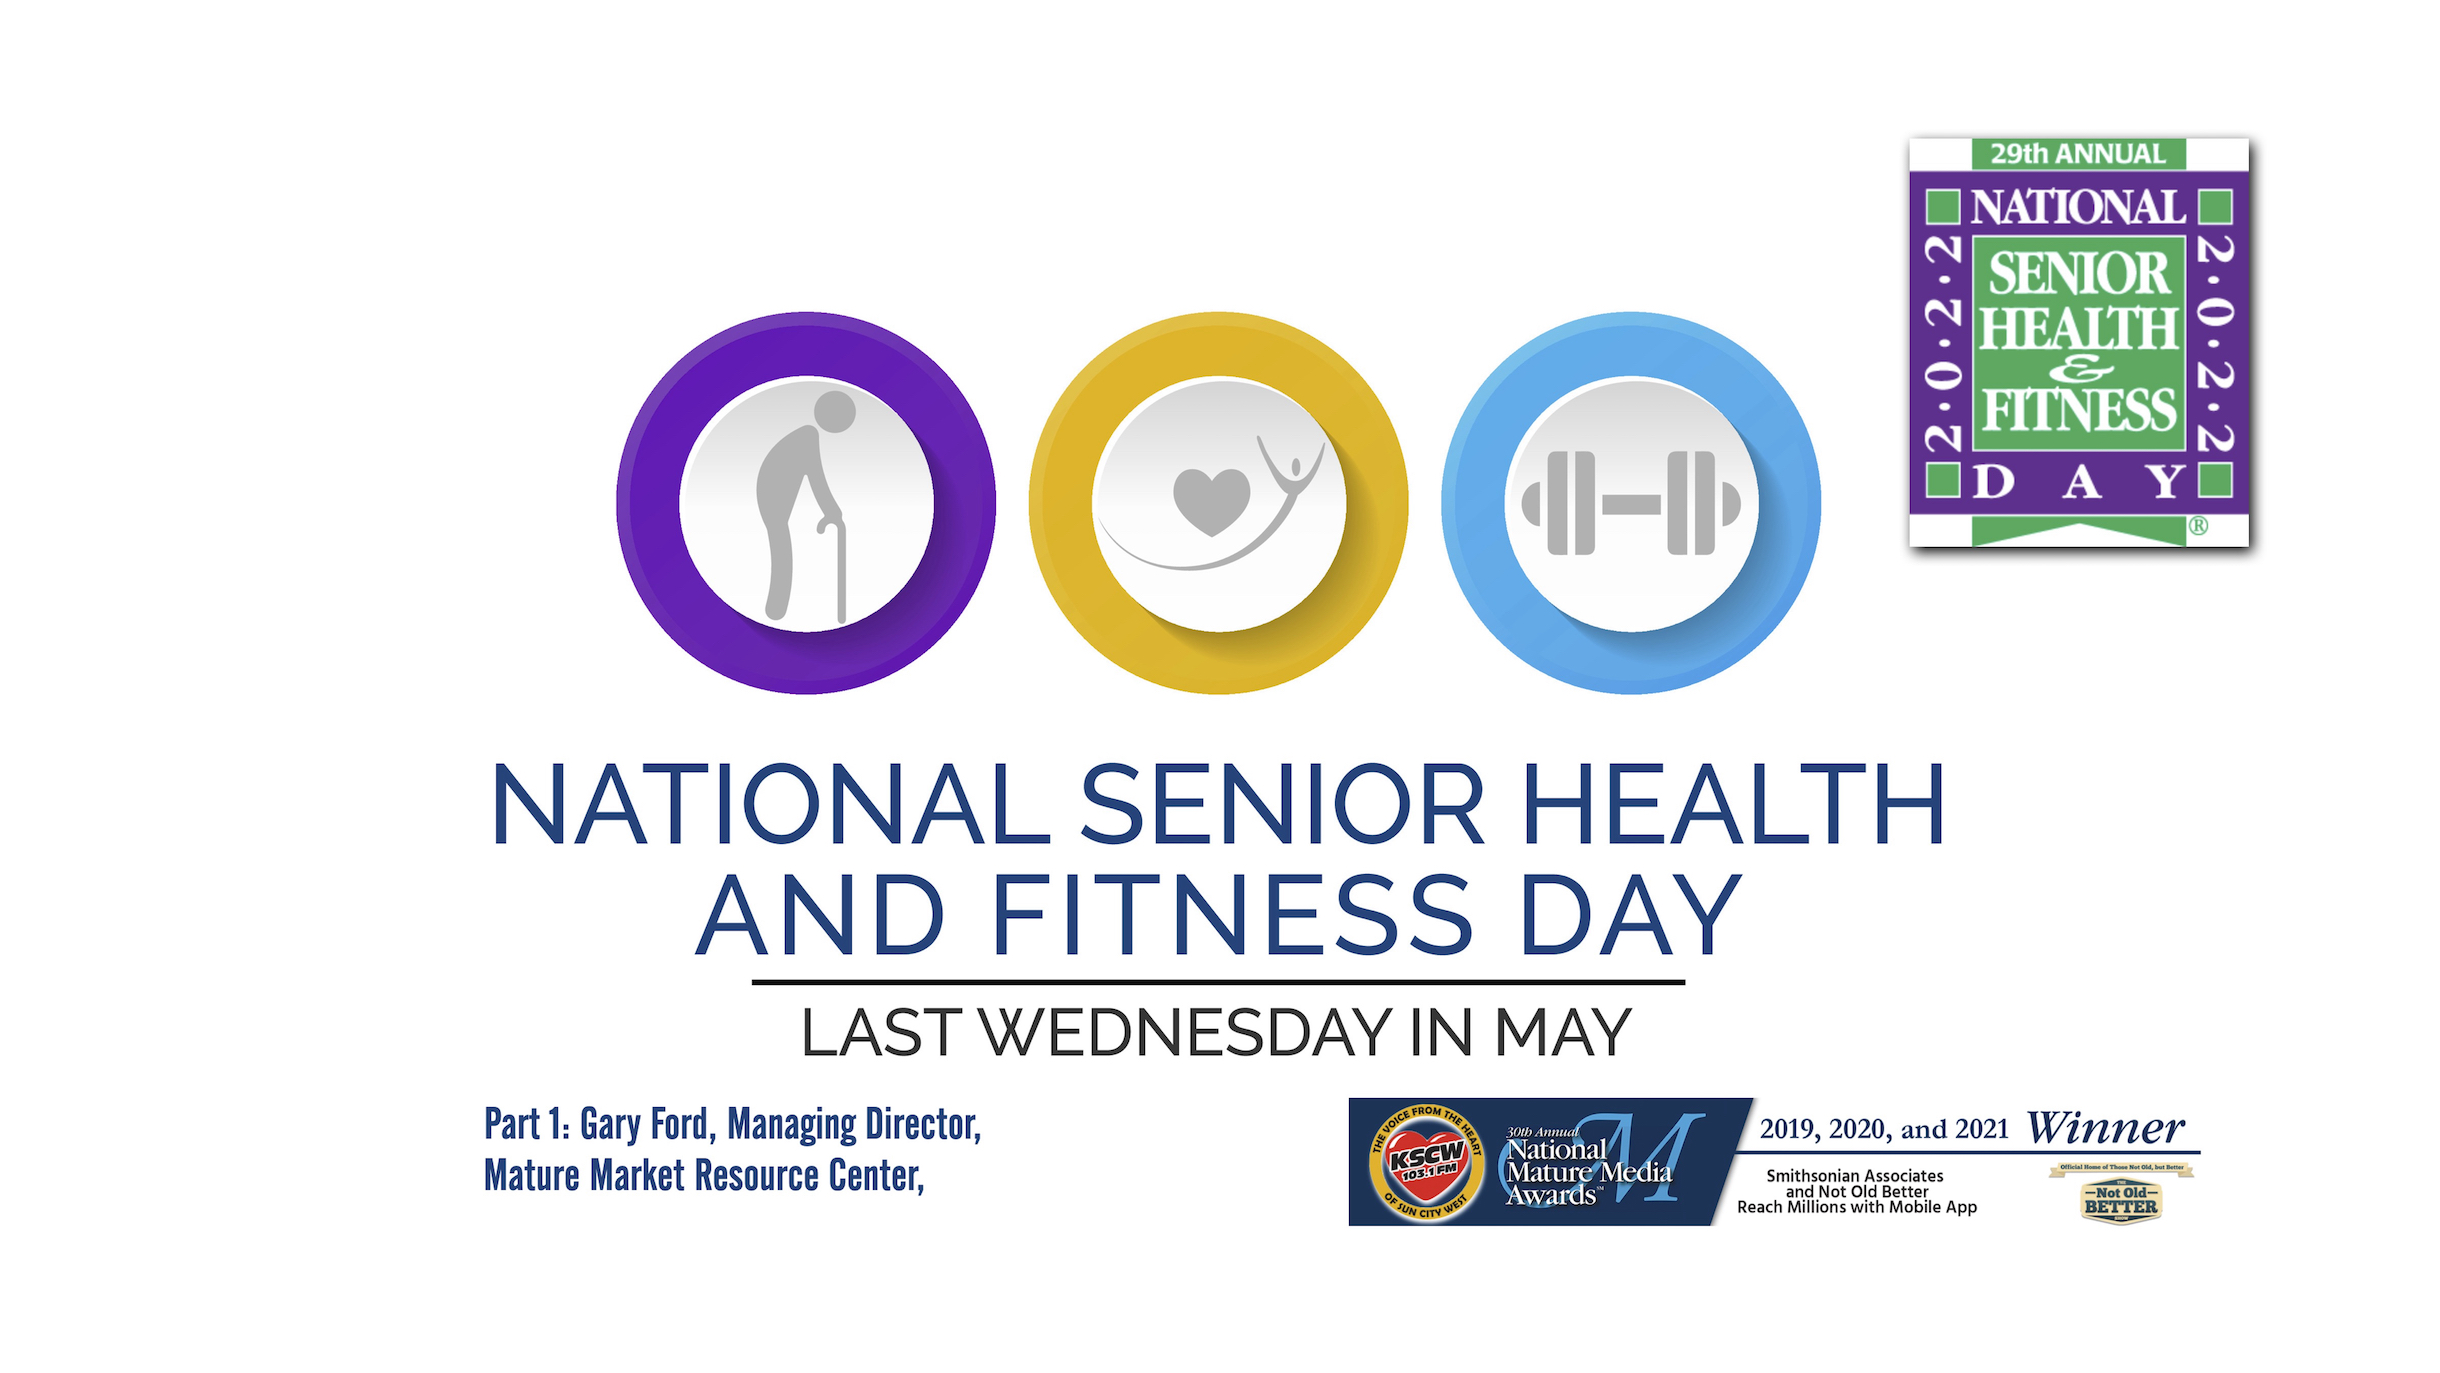 National Senior Health & Fitness Day – Gary Ford, Pt. 1